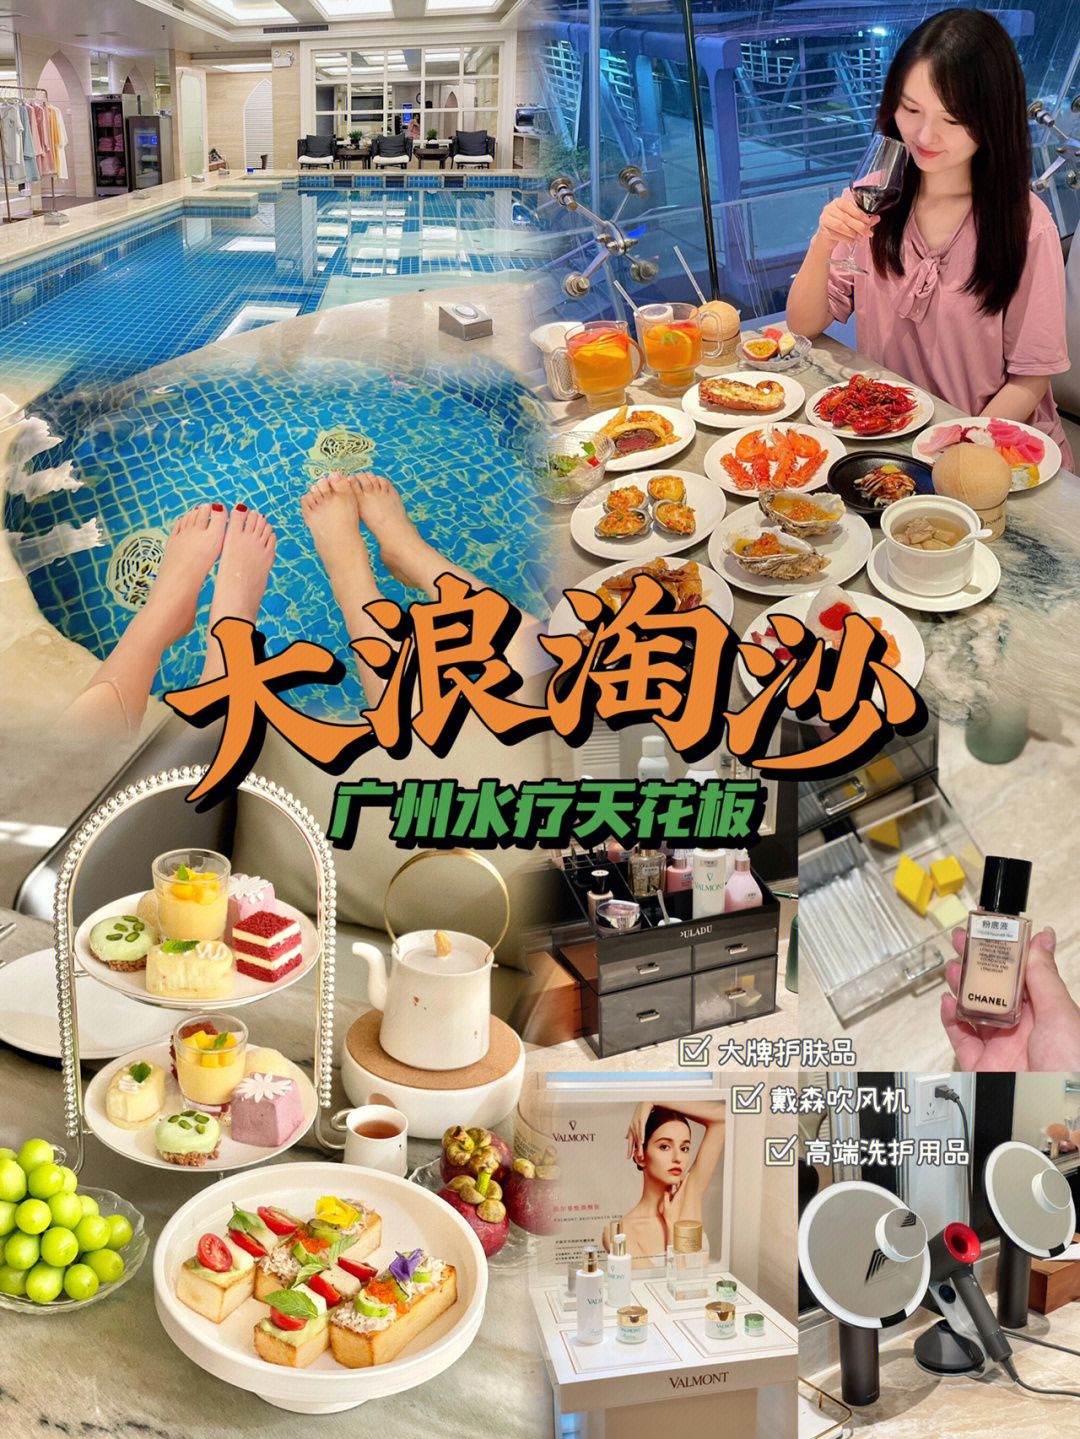 广州总统大酒店水疗图片